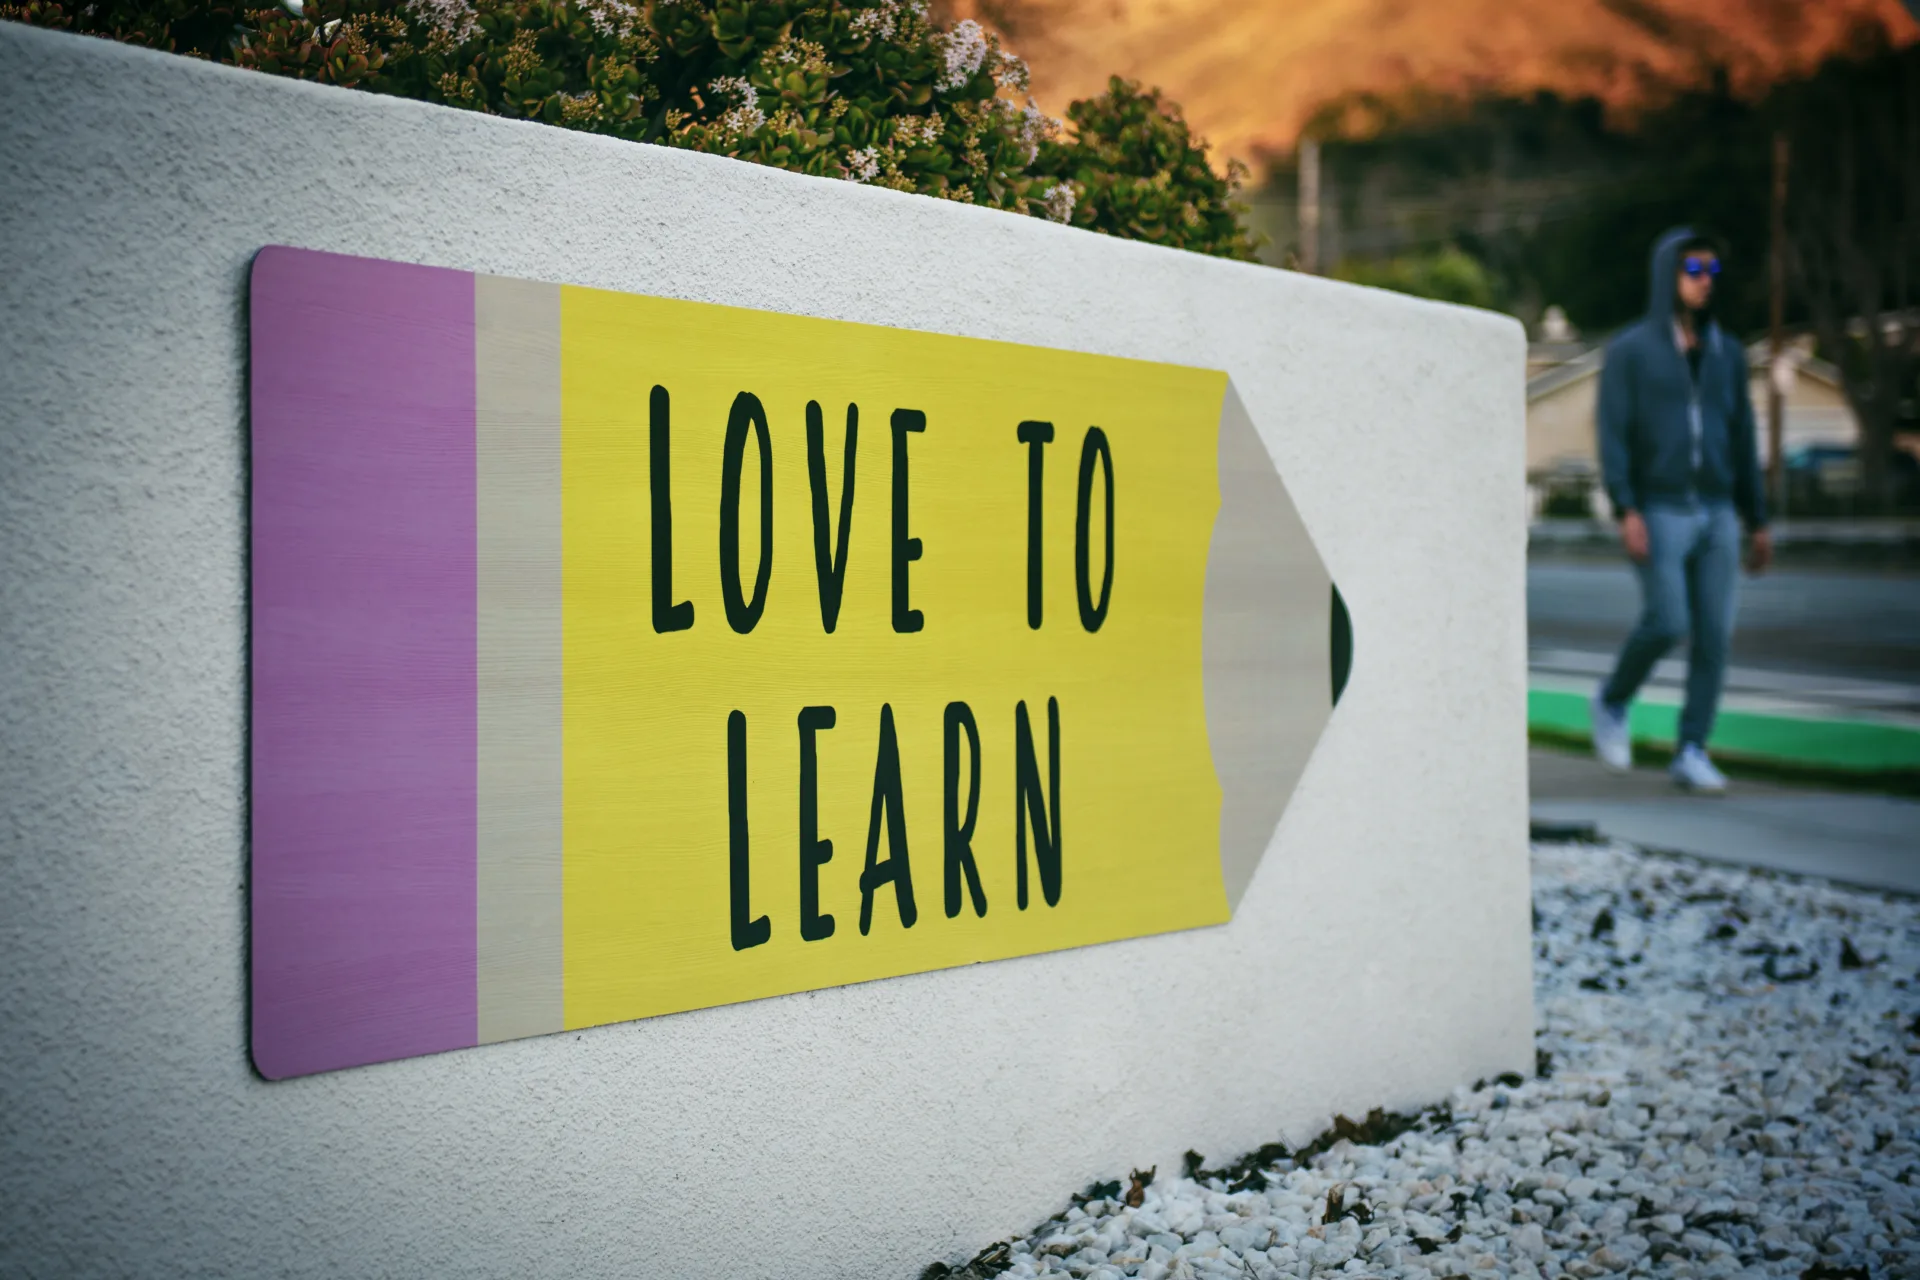 Ein Schild mit der Aufschrift "LOVE TO LEARN" an einer Mauer mit einem vorbeigehenden Fußgänger im Hintergrund.